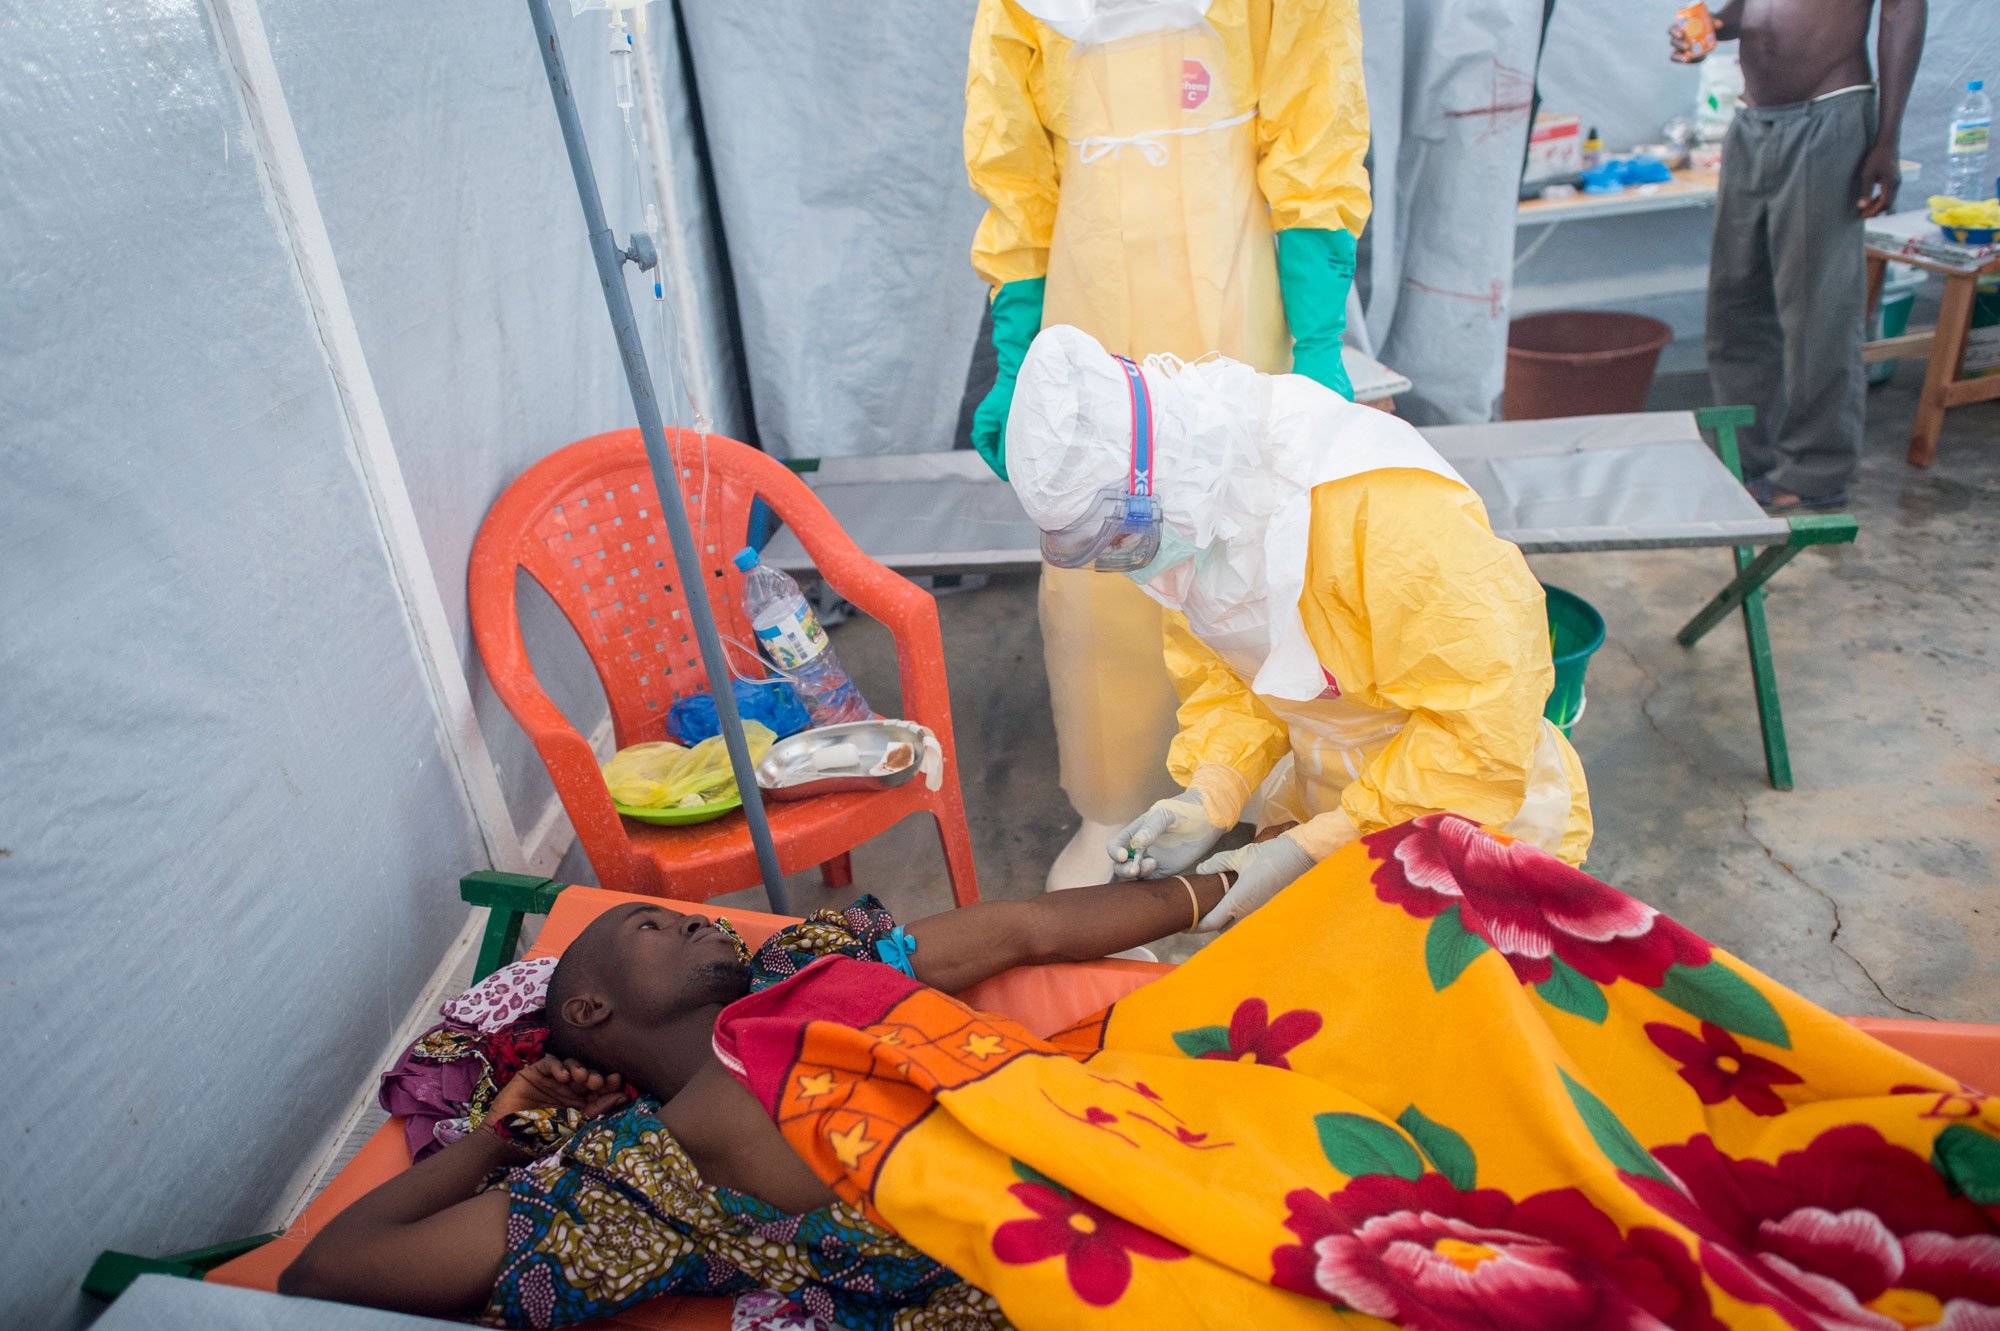 無國界醫生在幾內亞的伊波拉治療中心 © Sylvain CHERKAOUI